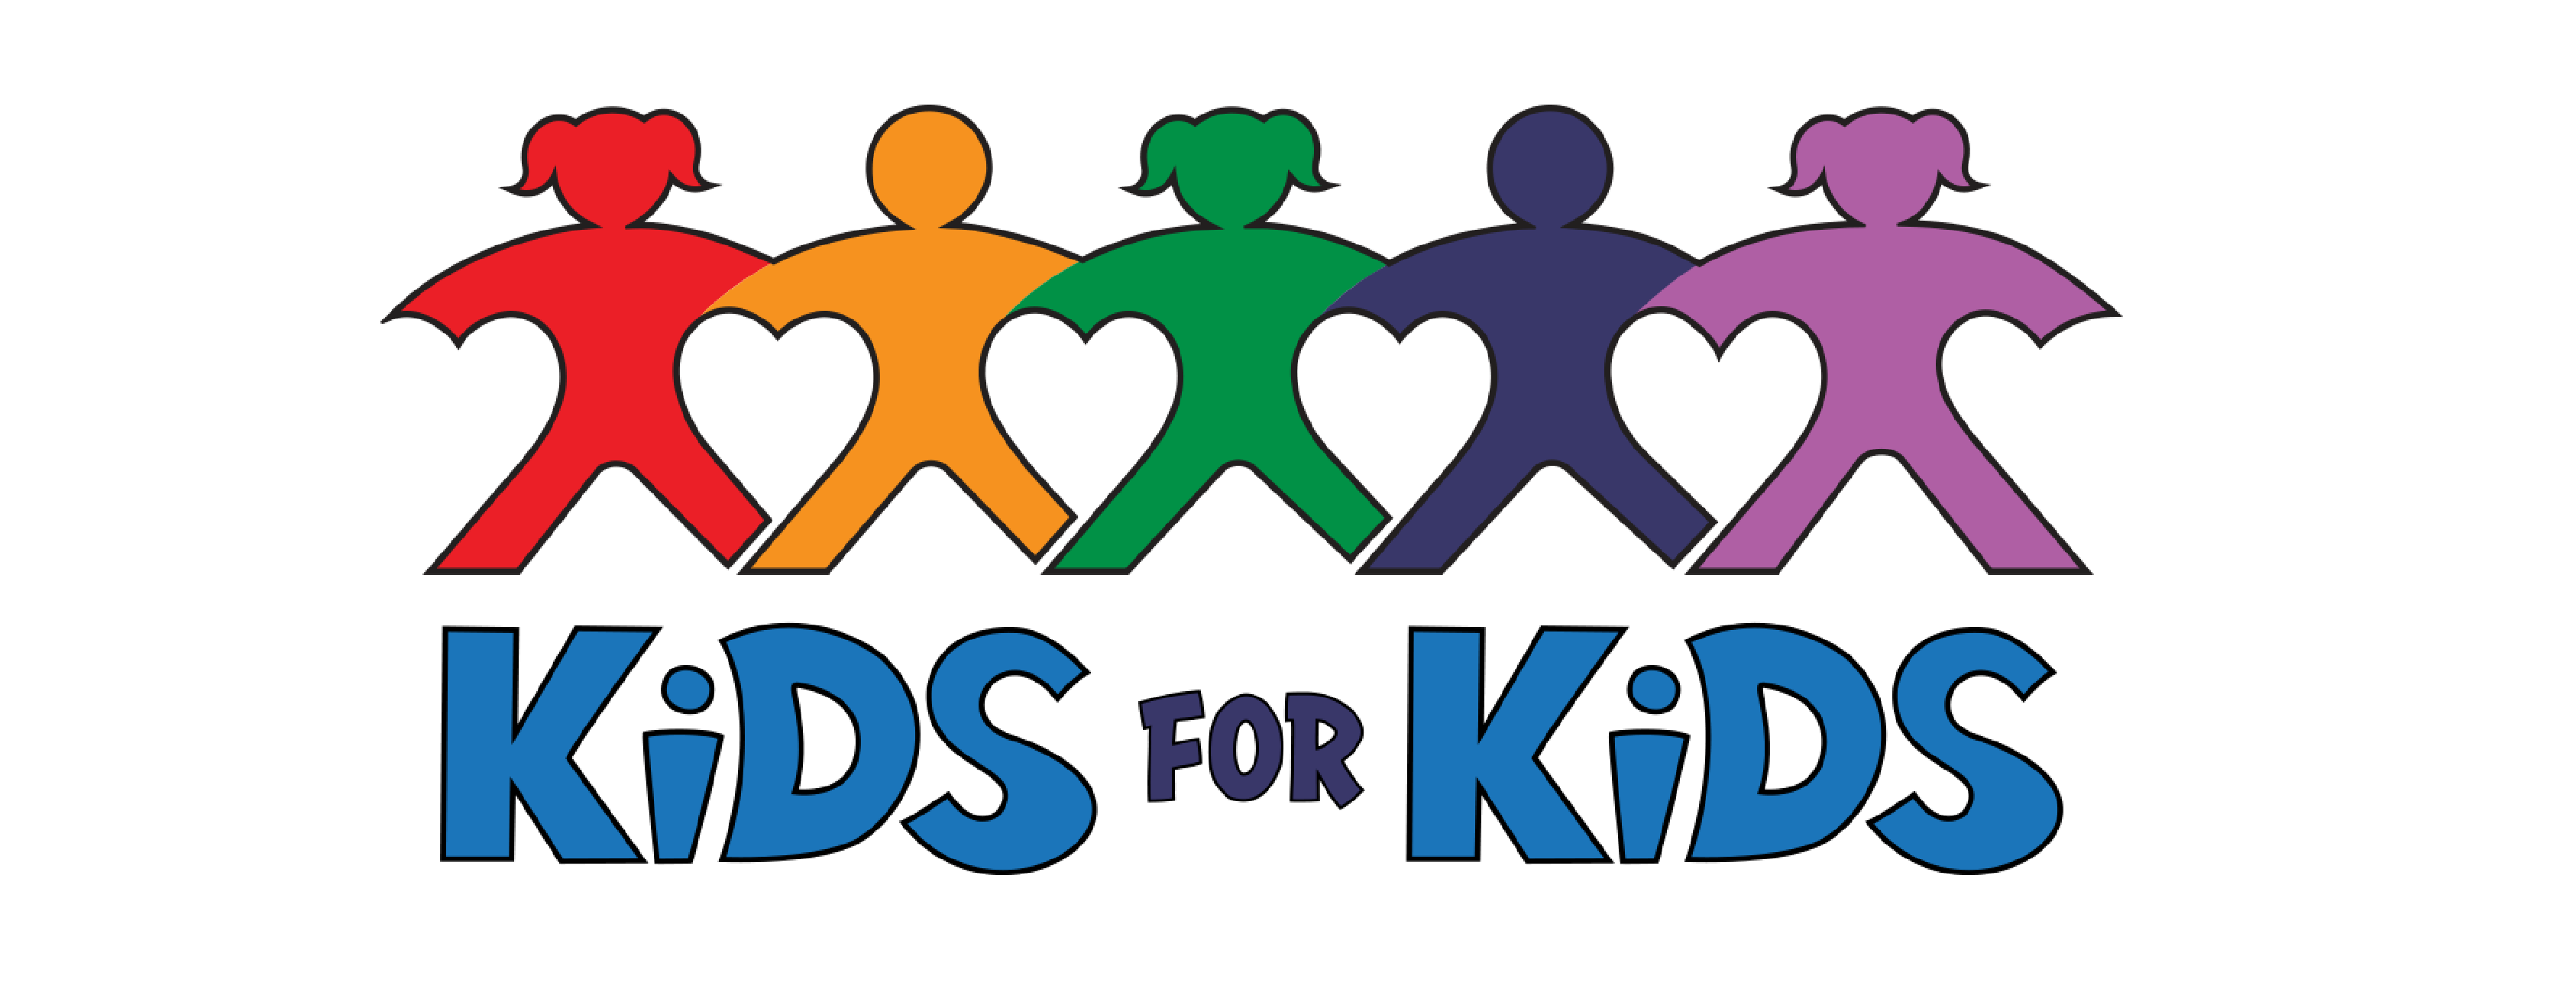 Kids For Kids logo